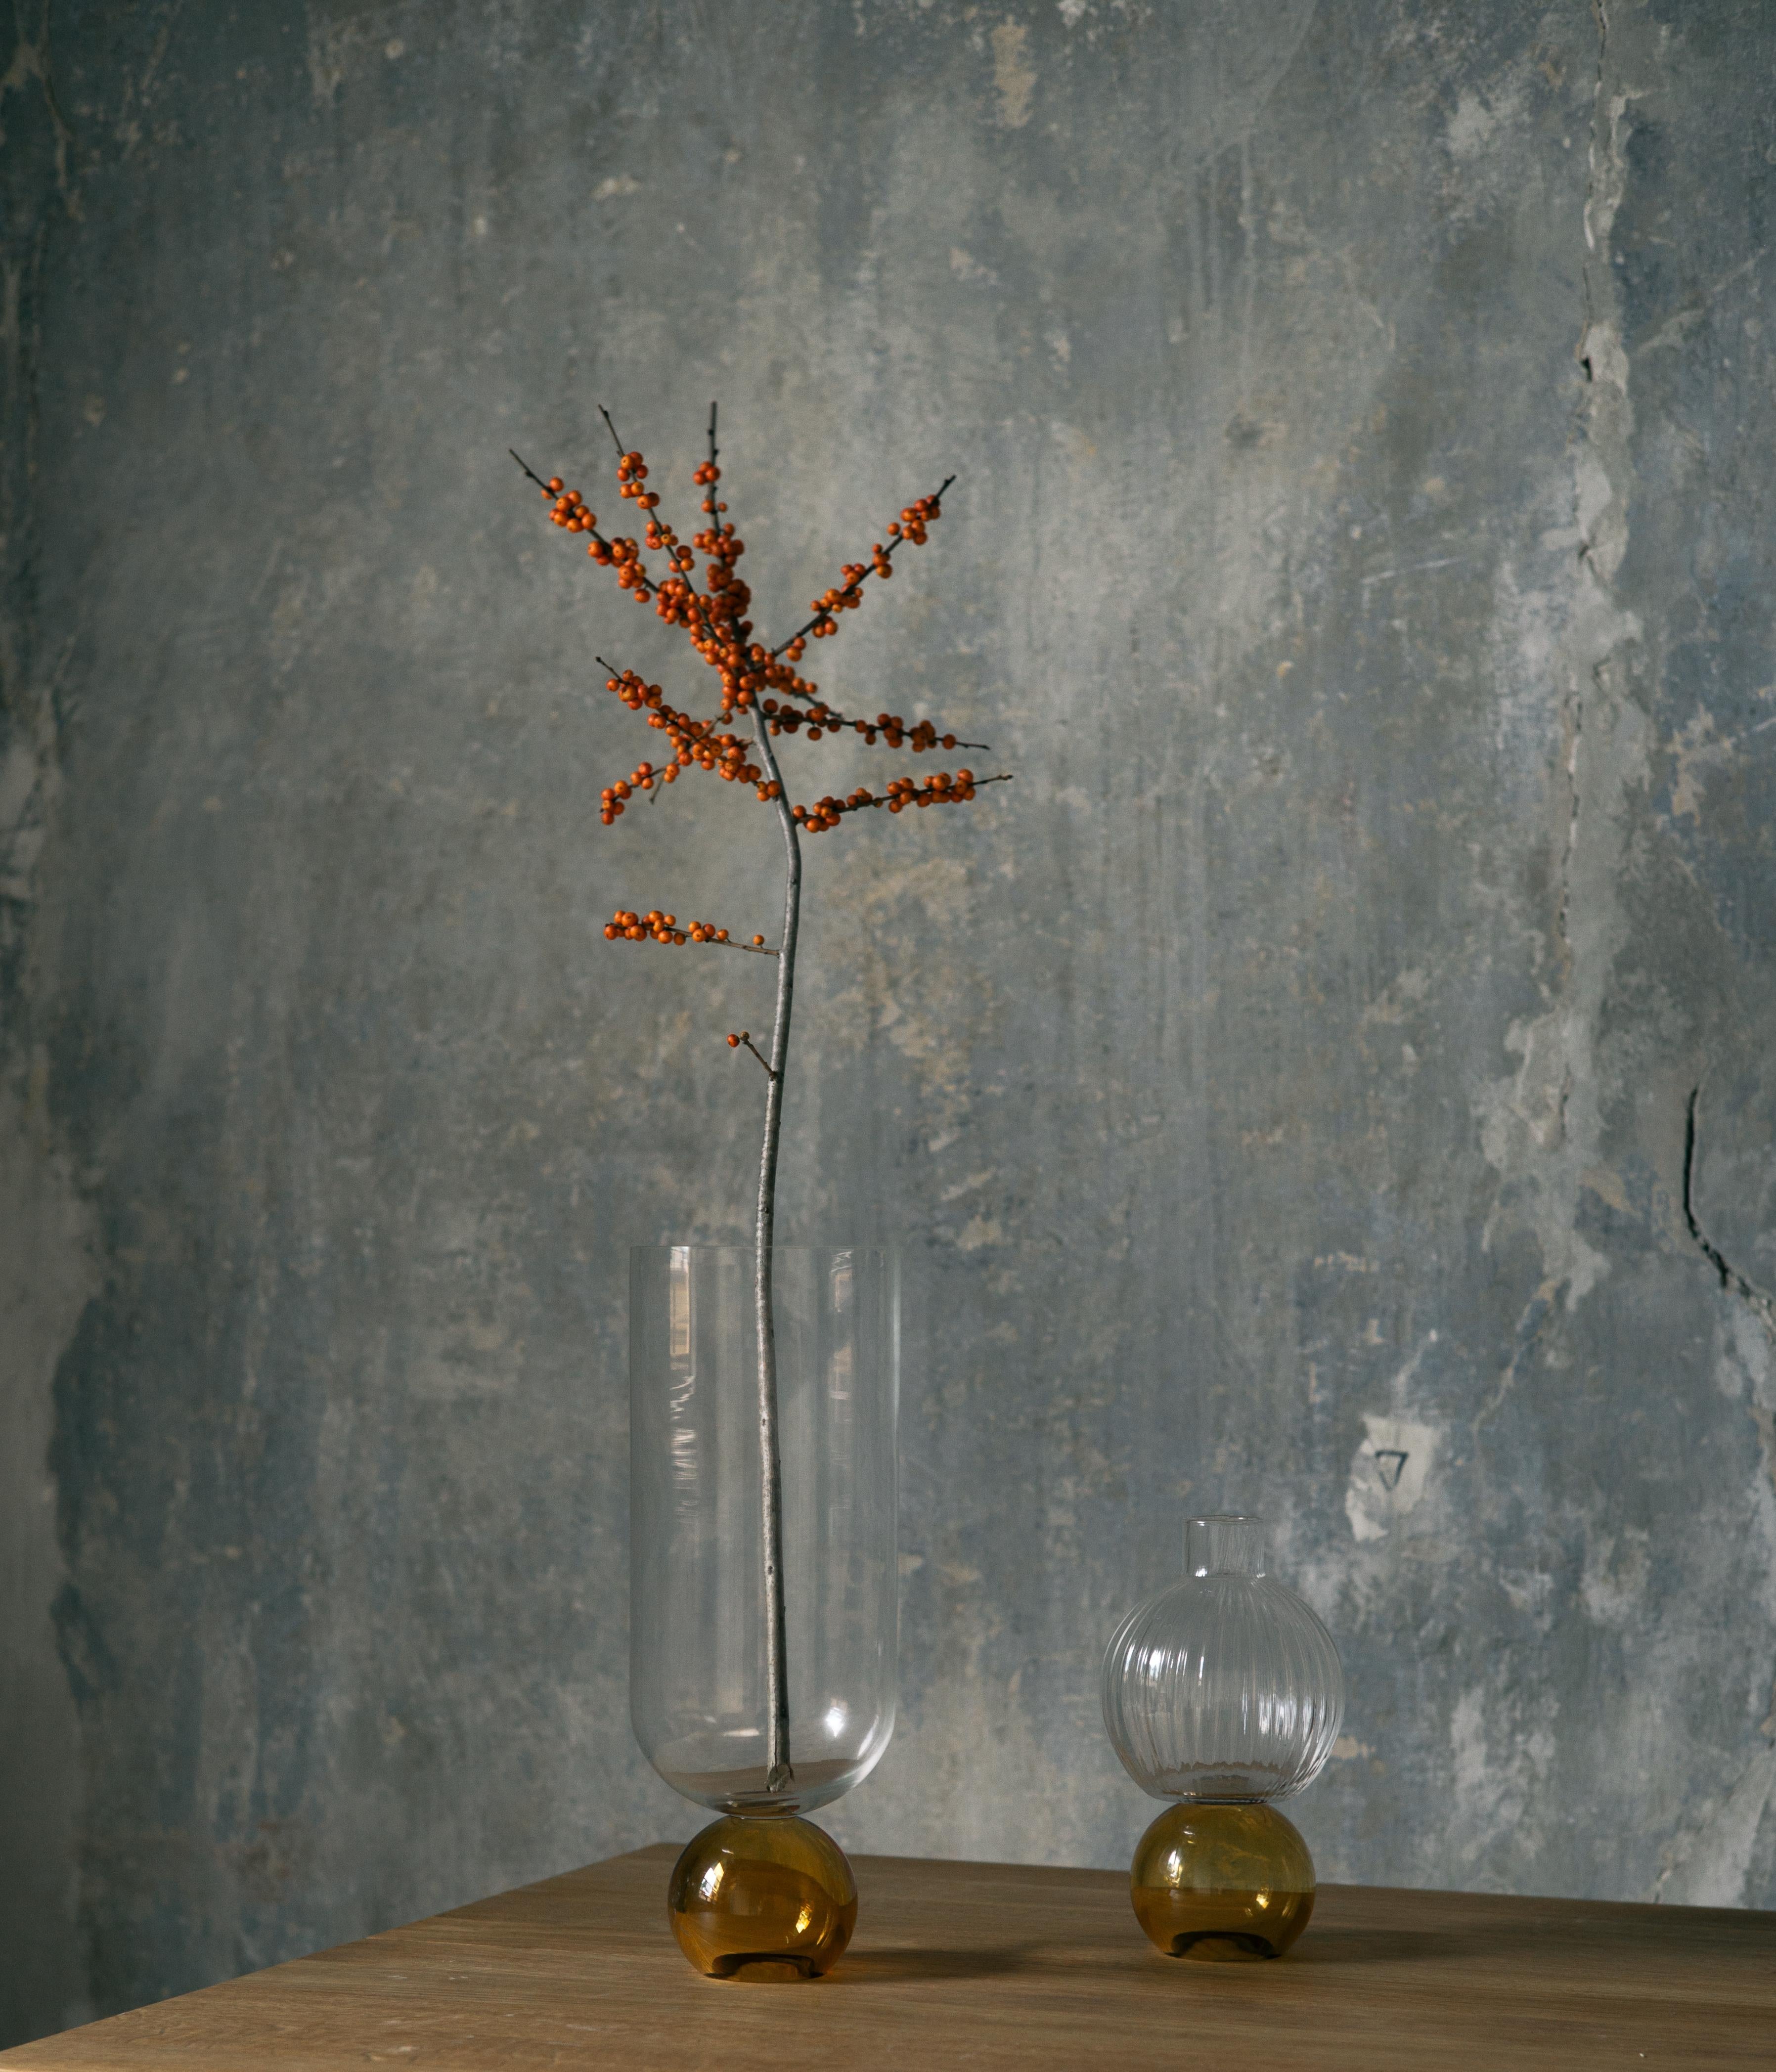 Diese bezaubernde, handgefertigte Vase aus feinem Glas ist ein Schaufenster des reinen Volumens. Ihre elegante Silhouette besteht aus einer kugelförmigen, grünen Basis, die den zylindrischen, klaren Körper trägt. Nach traditionellen Techniken aus